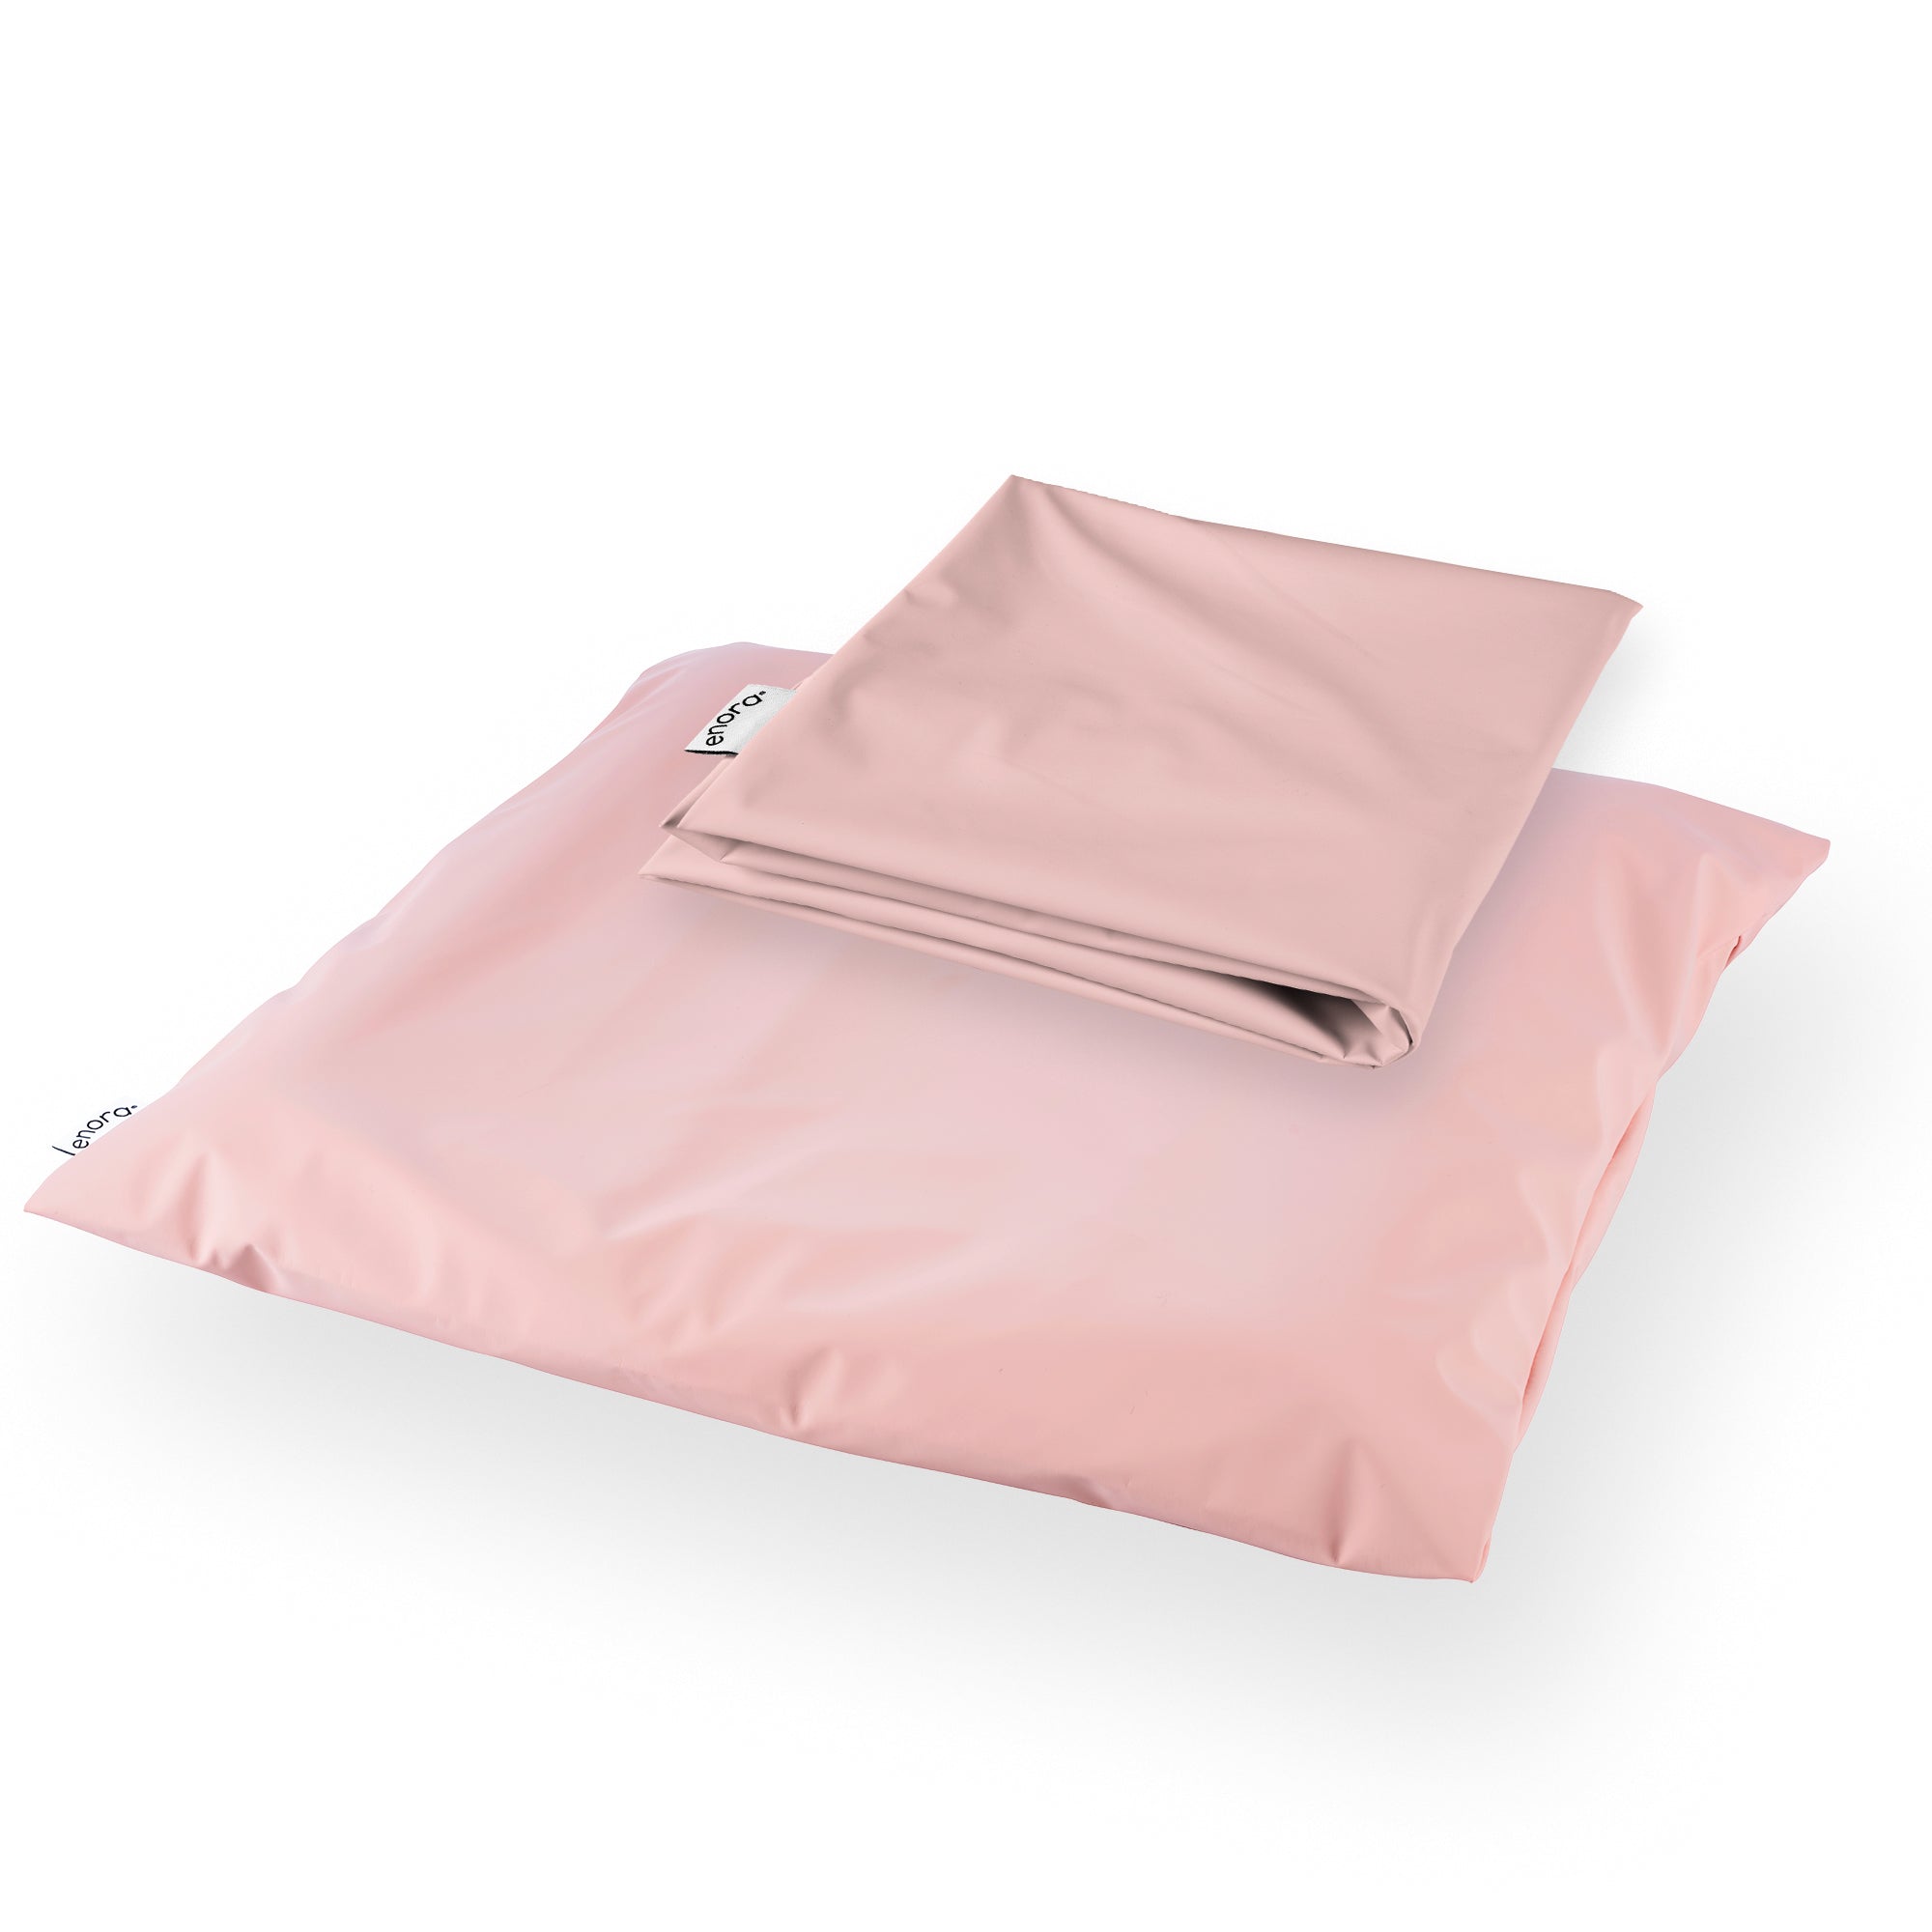 Enora® Air Cushion Dual Cover Set